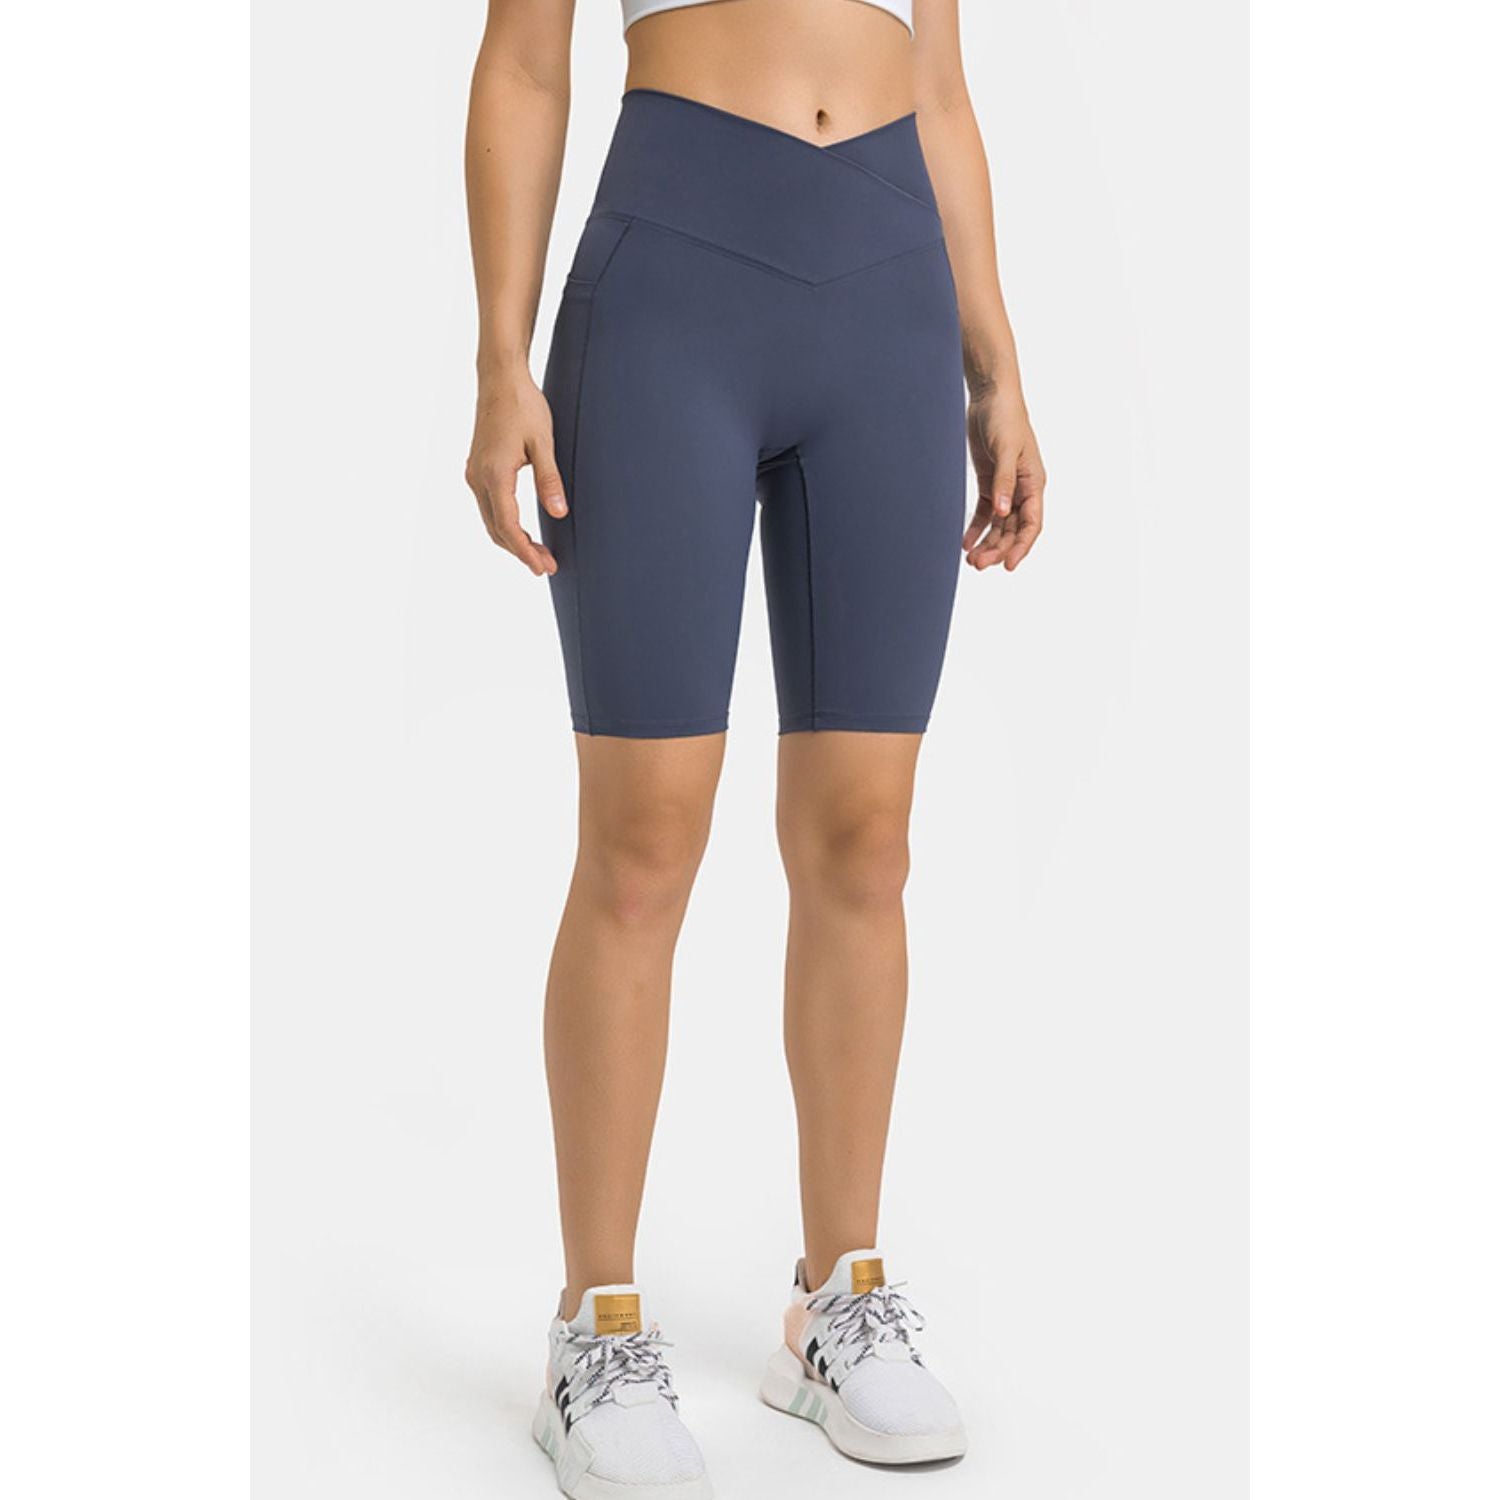 High Waist Biker Shorts with Pockets - TiffanyzKlozet